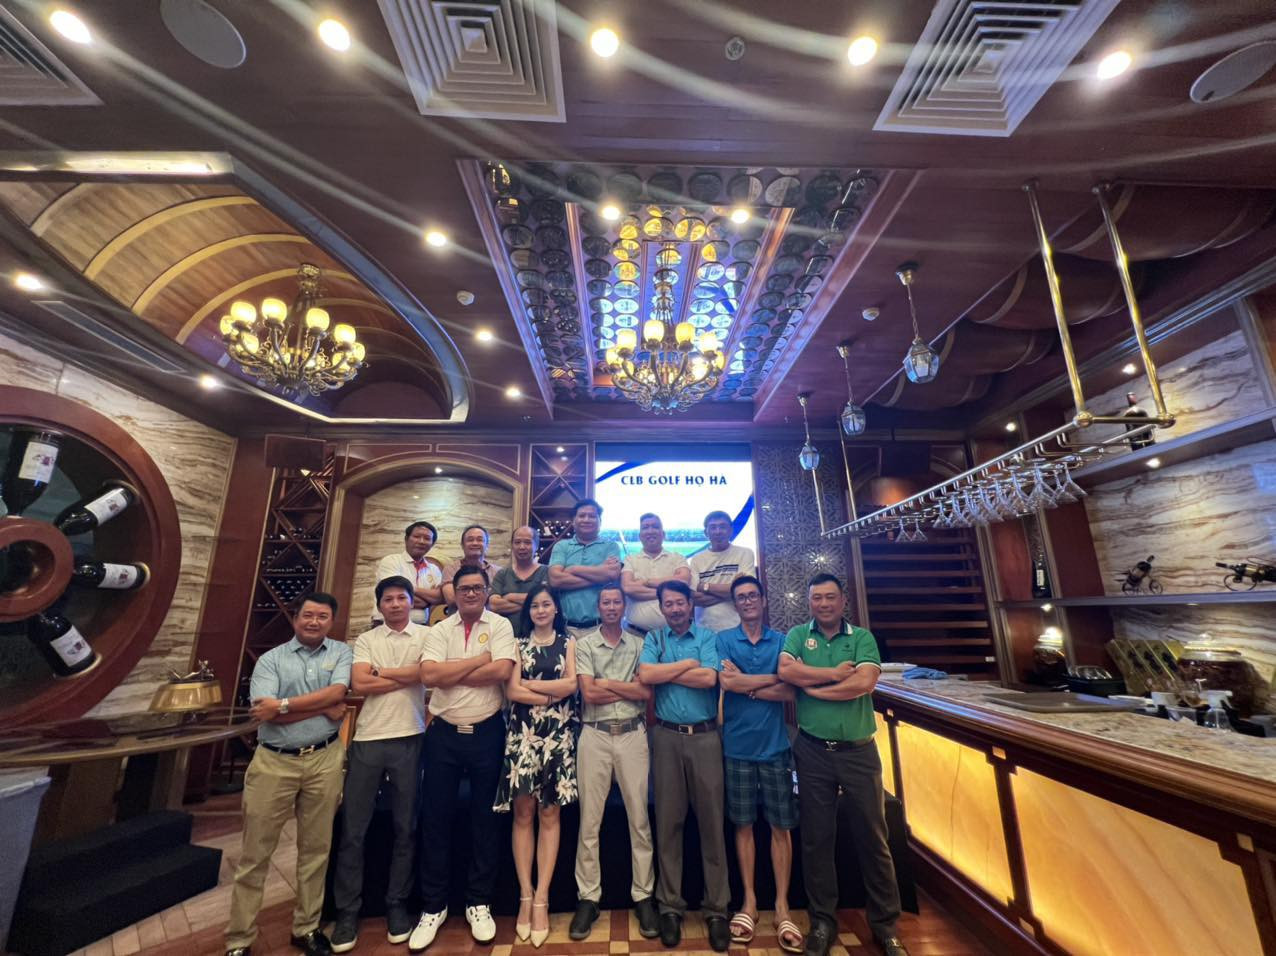 Đội trưởng đội tuyển CLB golf họ Hà Việt Nam - Hà Ngọc Hoàng Lộc đạt giải HIO gần 3 tỷ tại giải Vô địch các CLB dòng họ phía Nam - Ảnh 4.